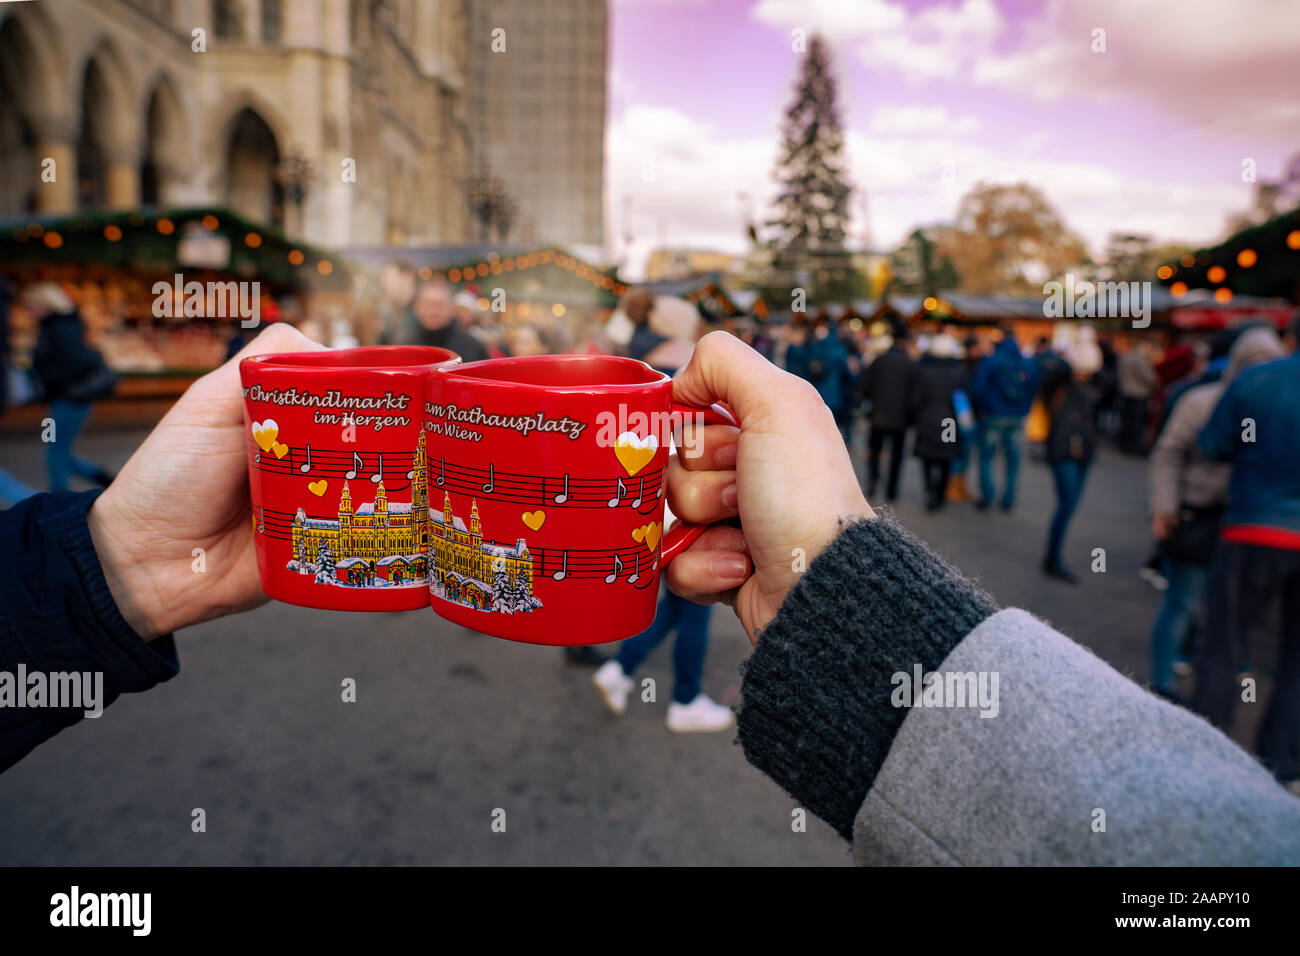 Wien, Österreich - 11.23.2019: Glühwein trinken heiße alkoholische spicey  Rotwein auf dem Weihnachtsmarkt Tassen auf dem Rathausplatz in Wien  Stockfotografie - Alamy